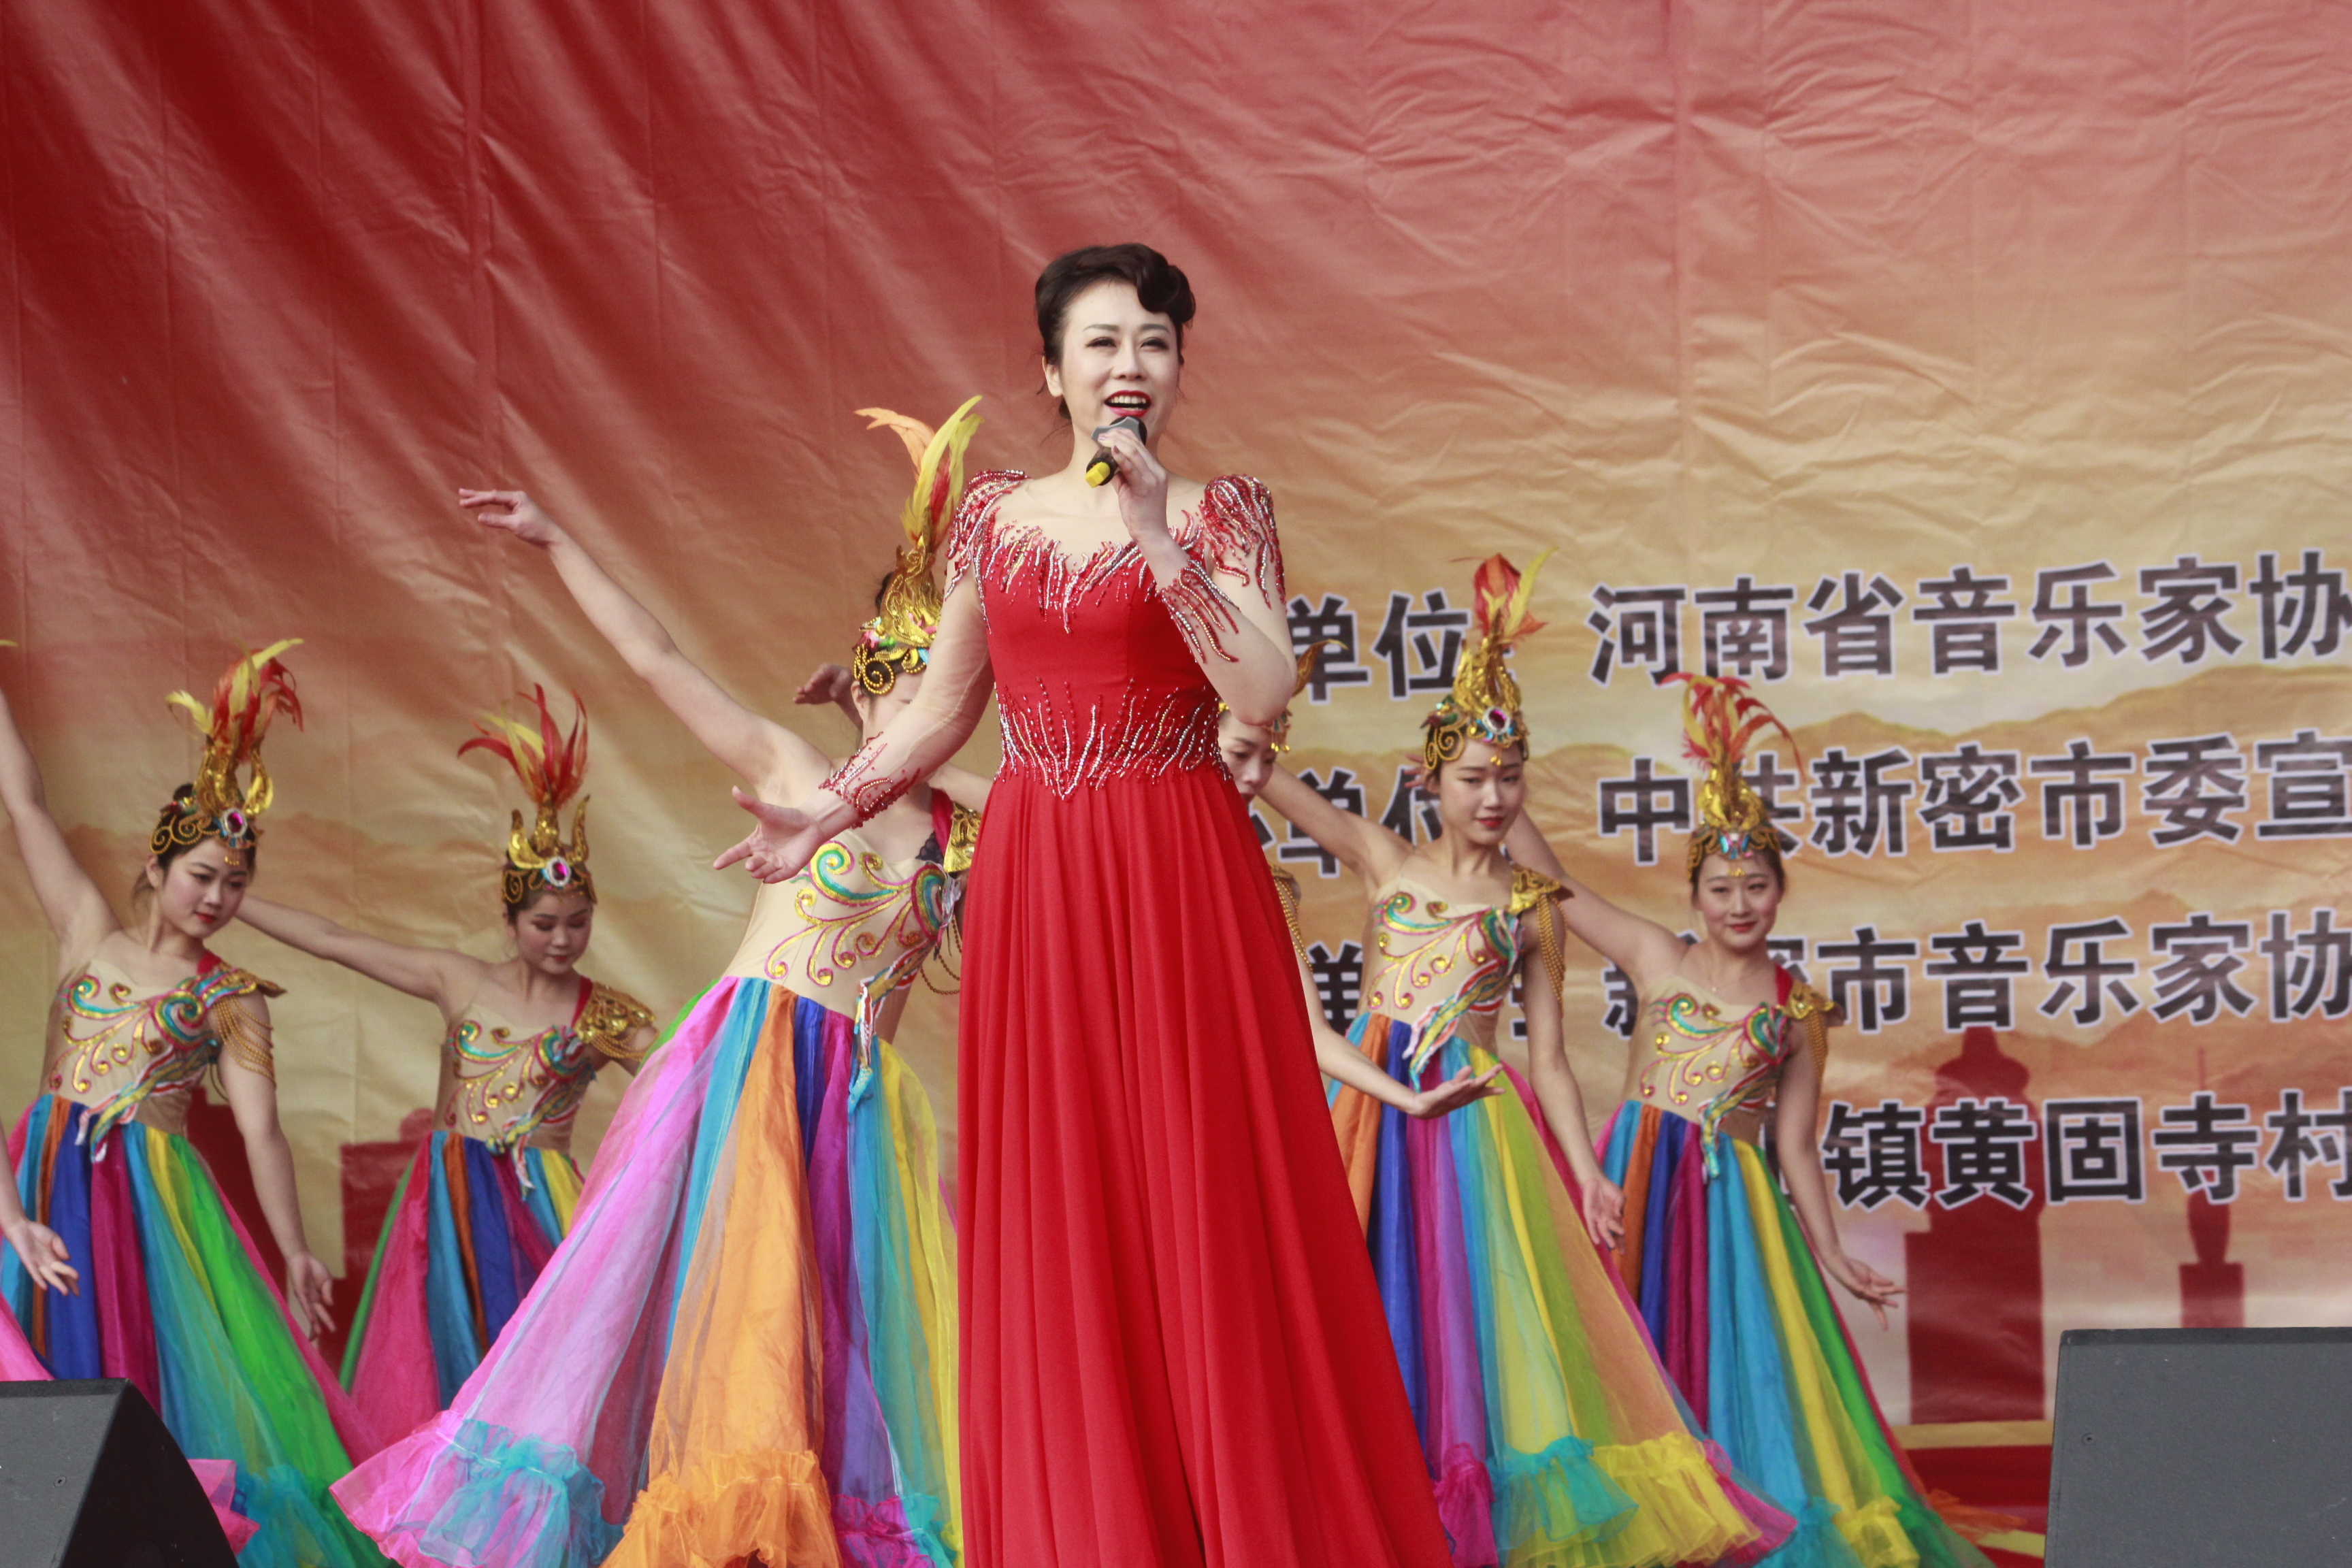 河南省歌舞演艺集团著名青年女高音歌唱家薛青演唱的歌曲《阳光路上》